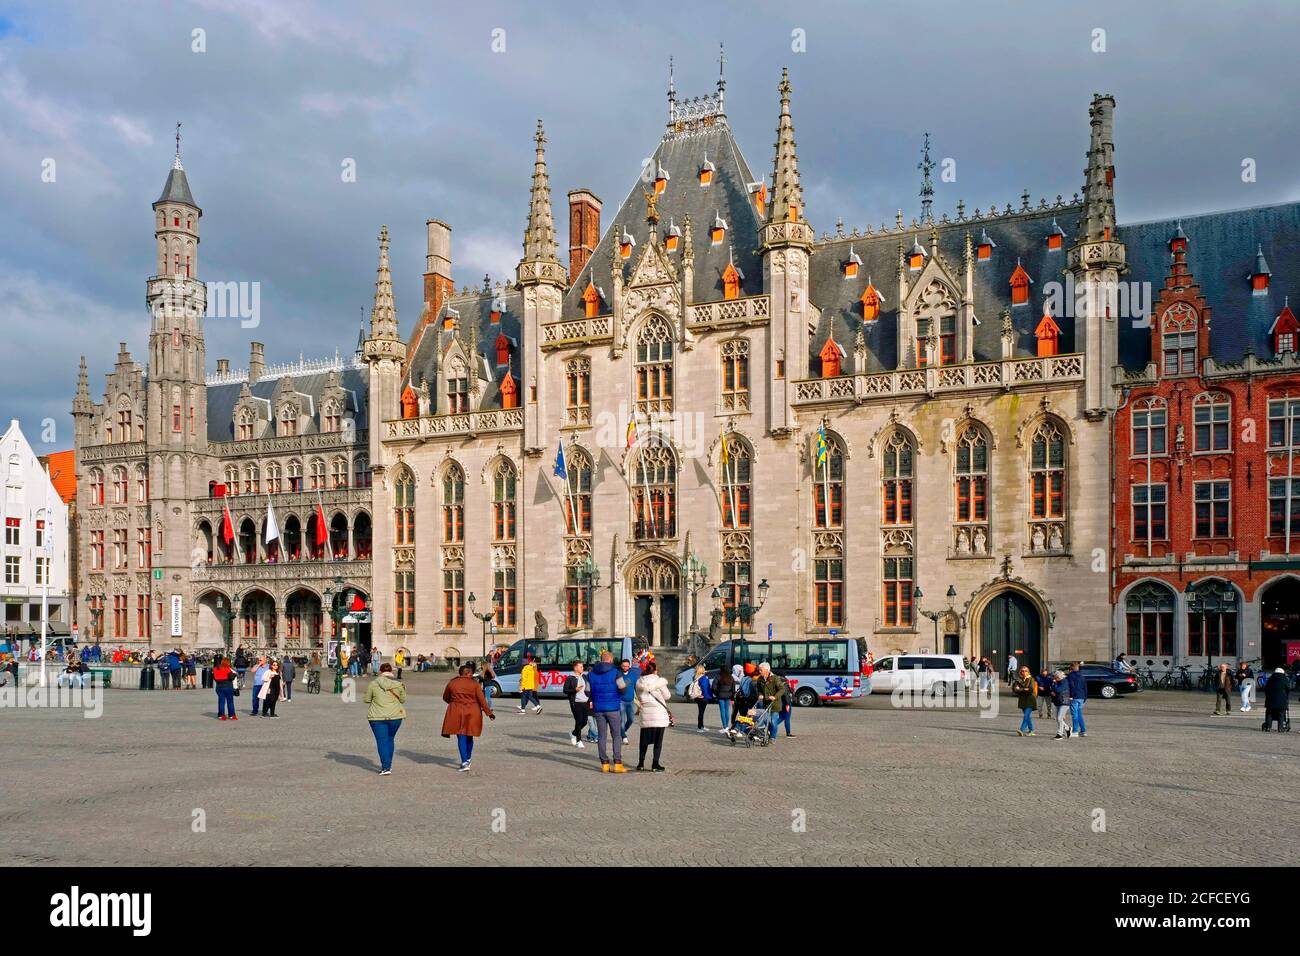 Place du marché avec Provinciaal Hof, Bruges, Flandre Occidentale, Belgique Banque D'Images